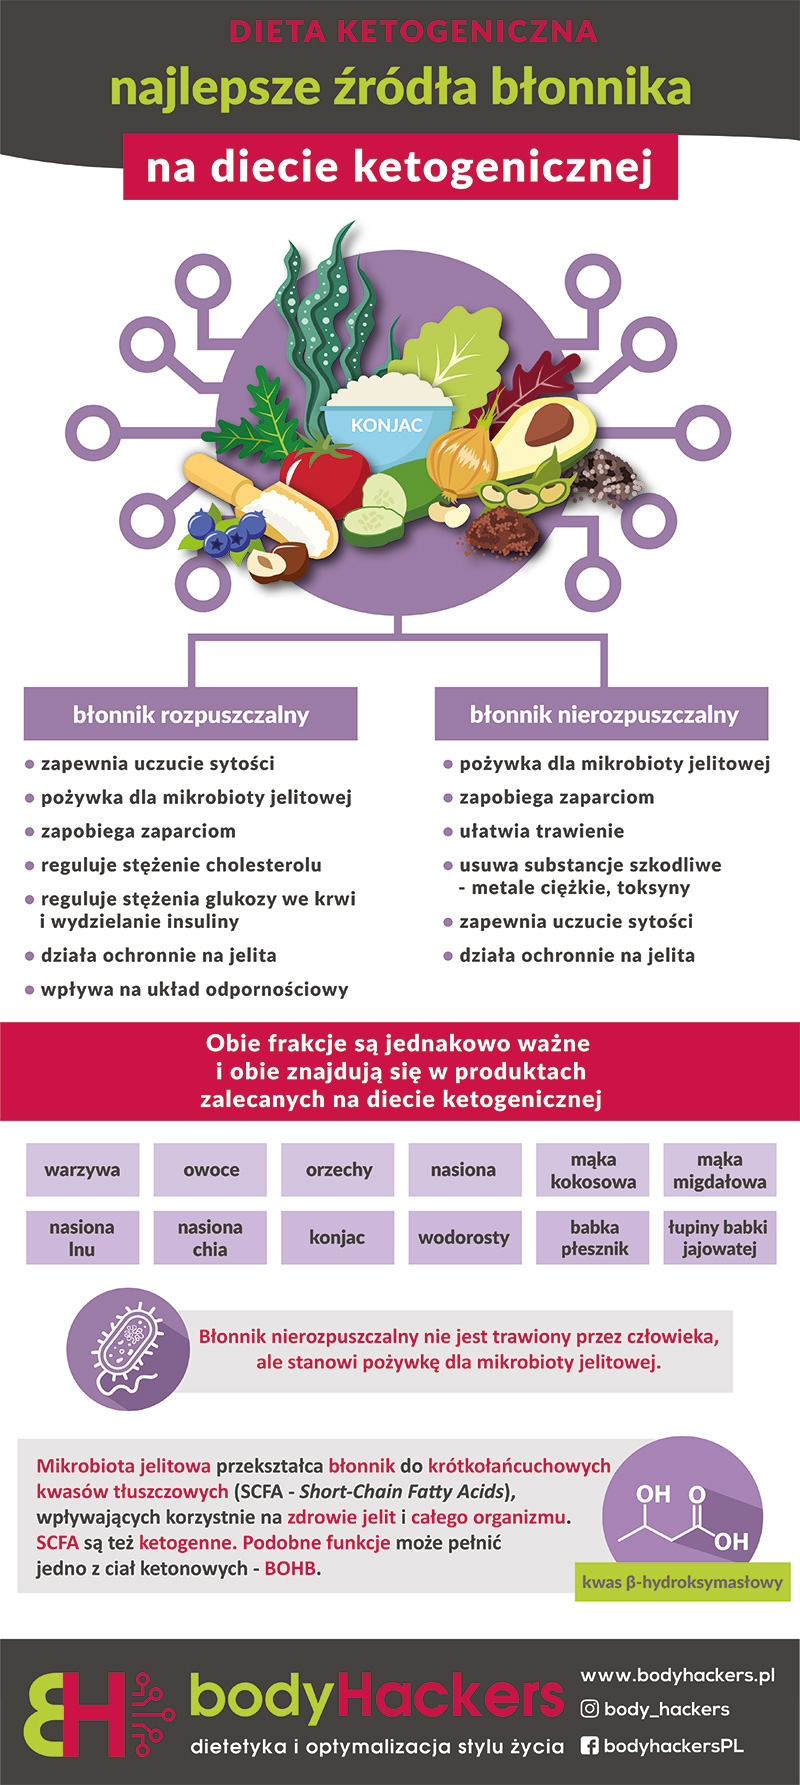 Błonnik w diecie ketogenicznej - rola i źródła